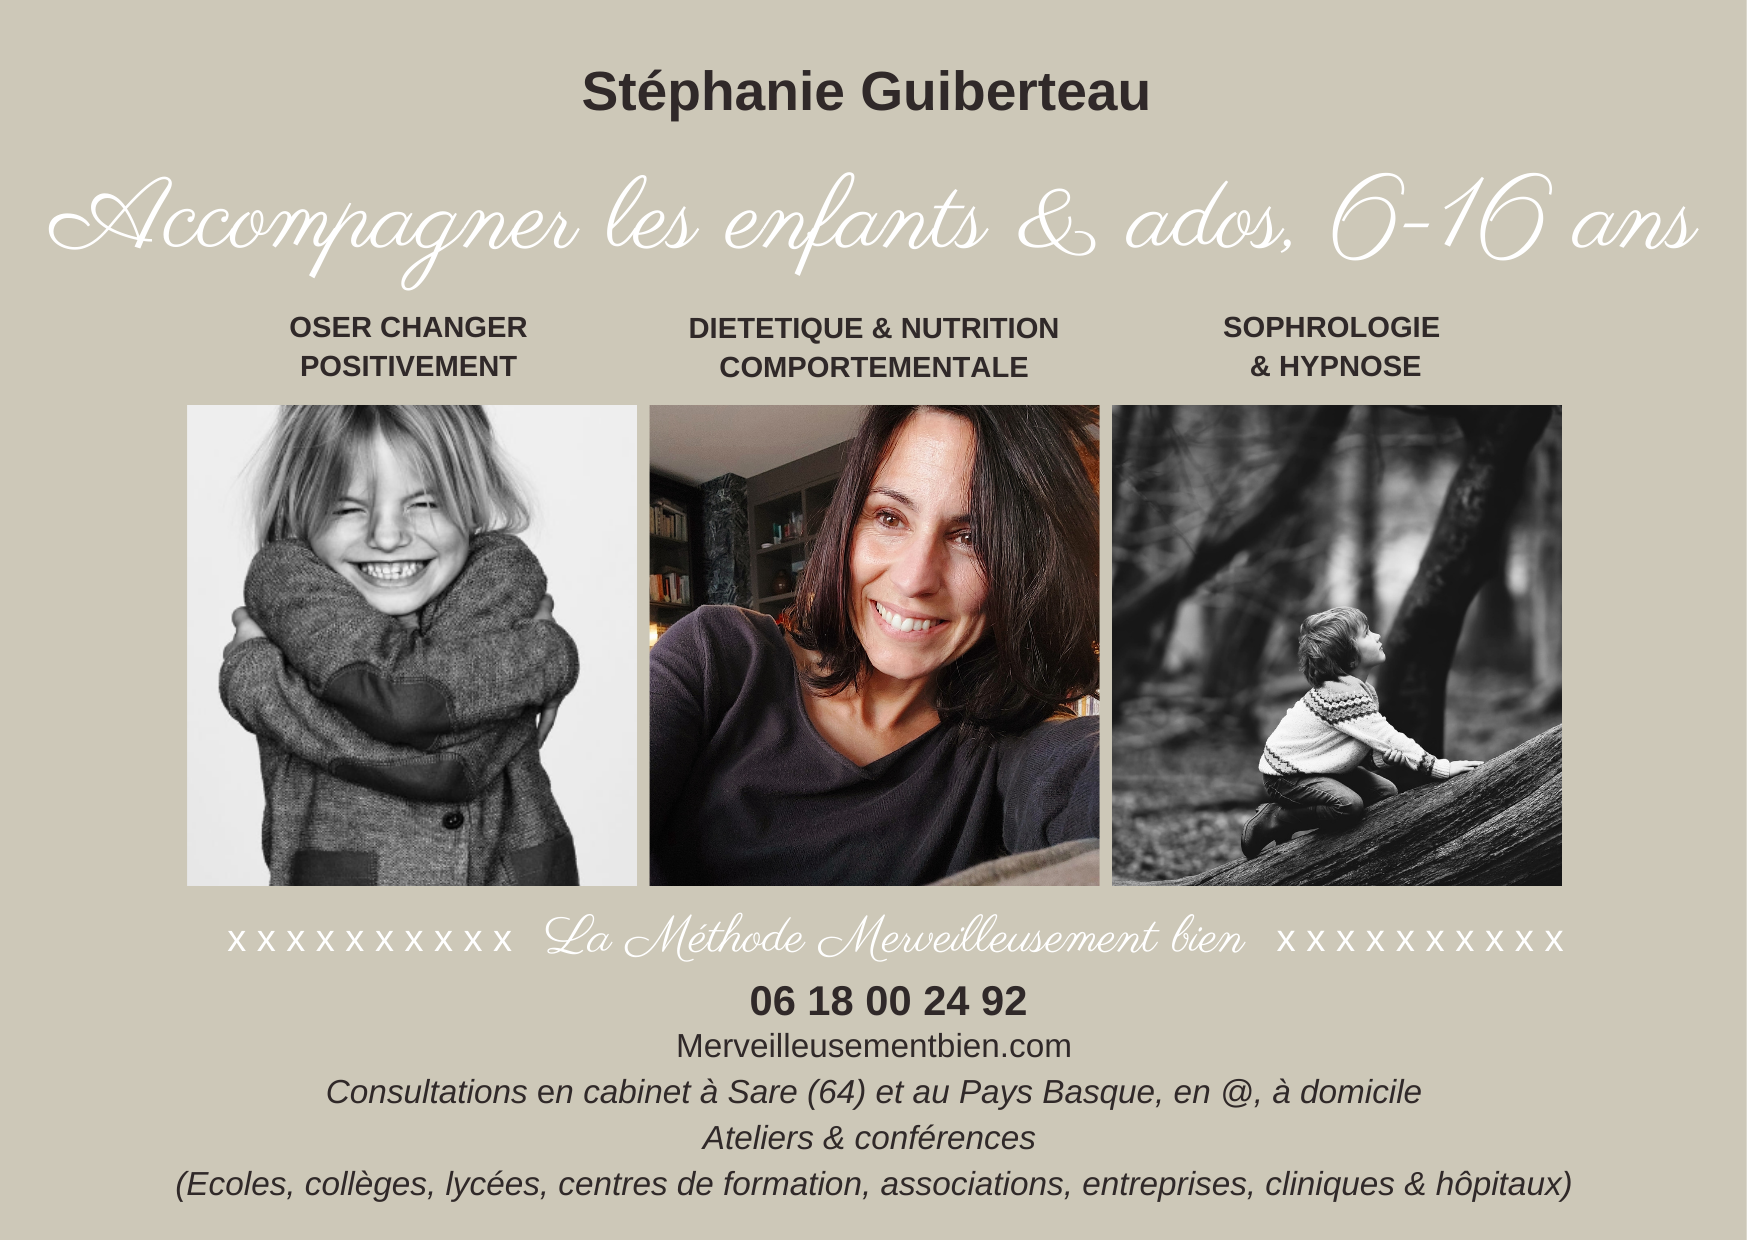 Accompagnement enfants & ados de 6 à 16 ans par Stéphanie Guiberteau